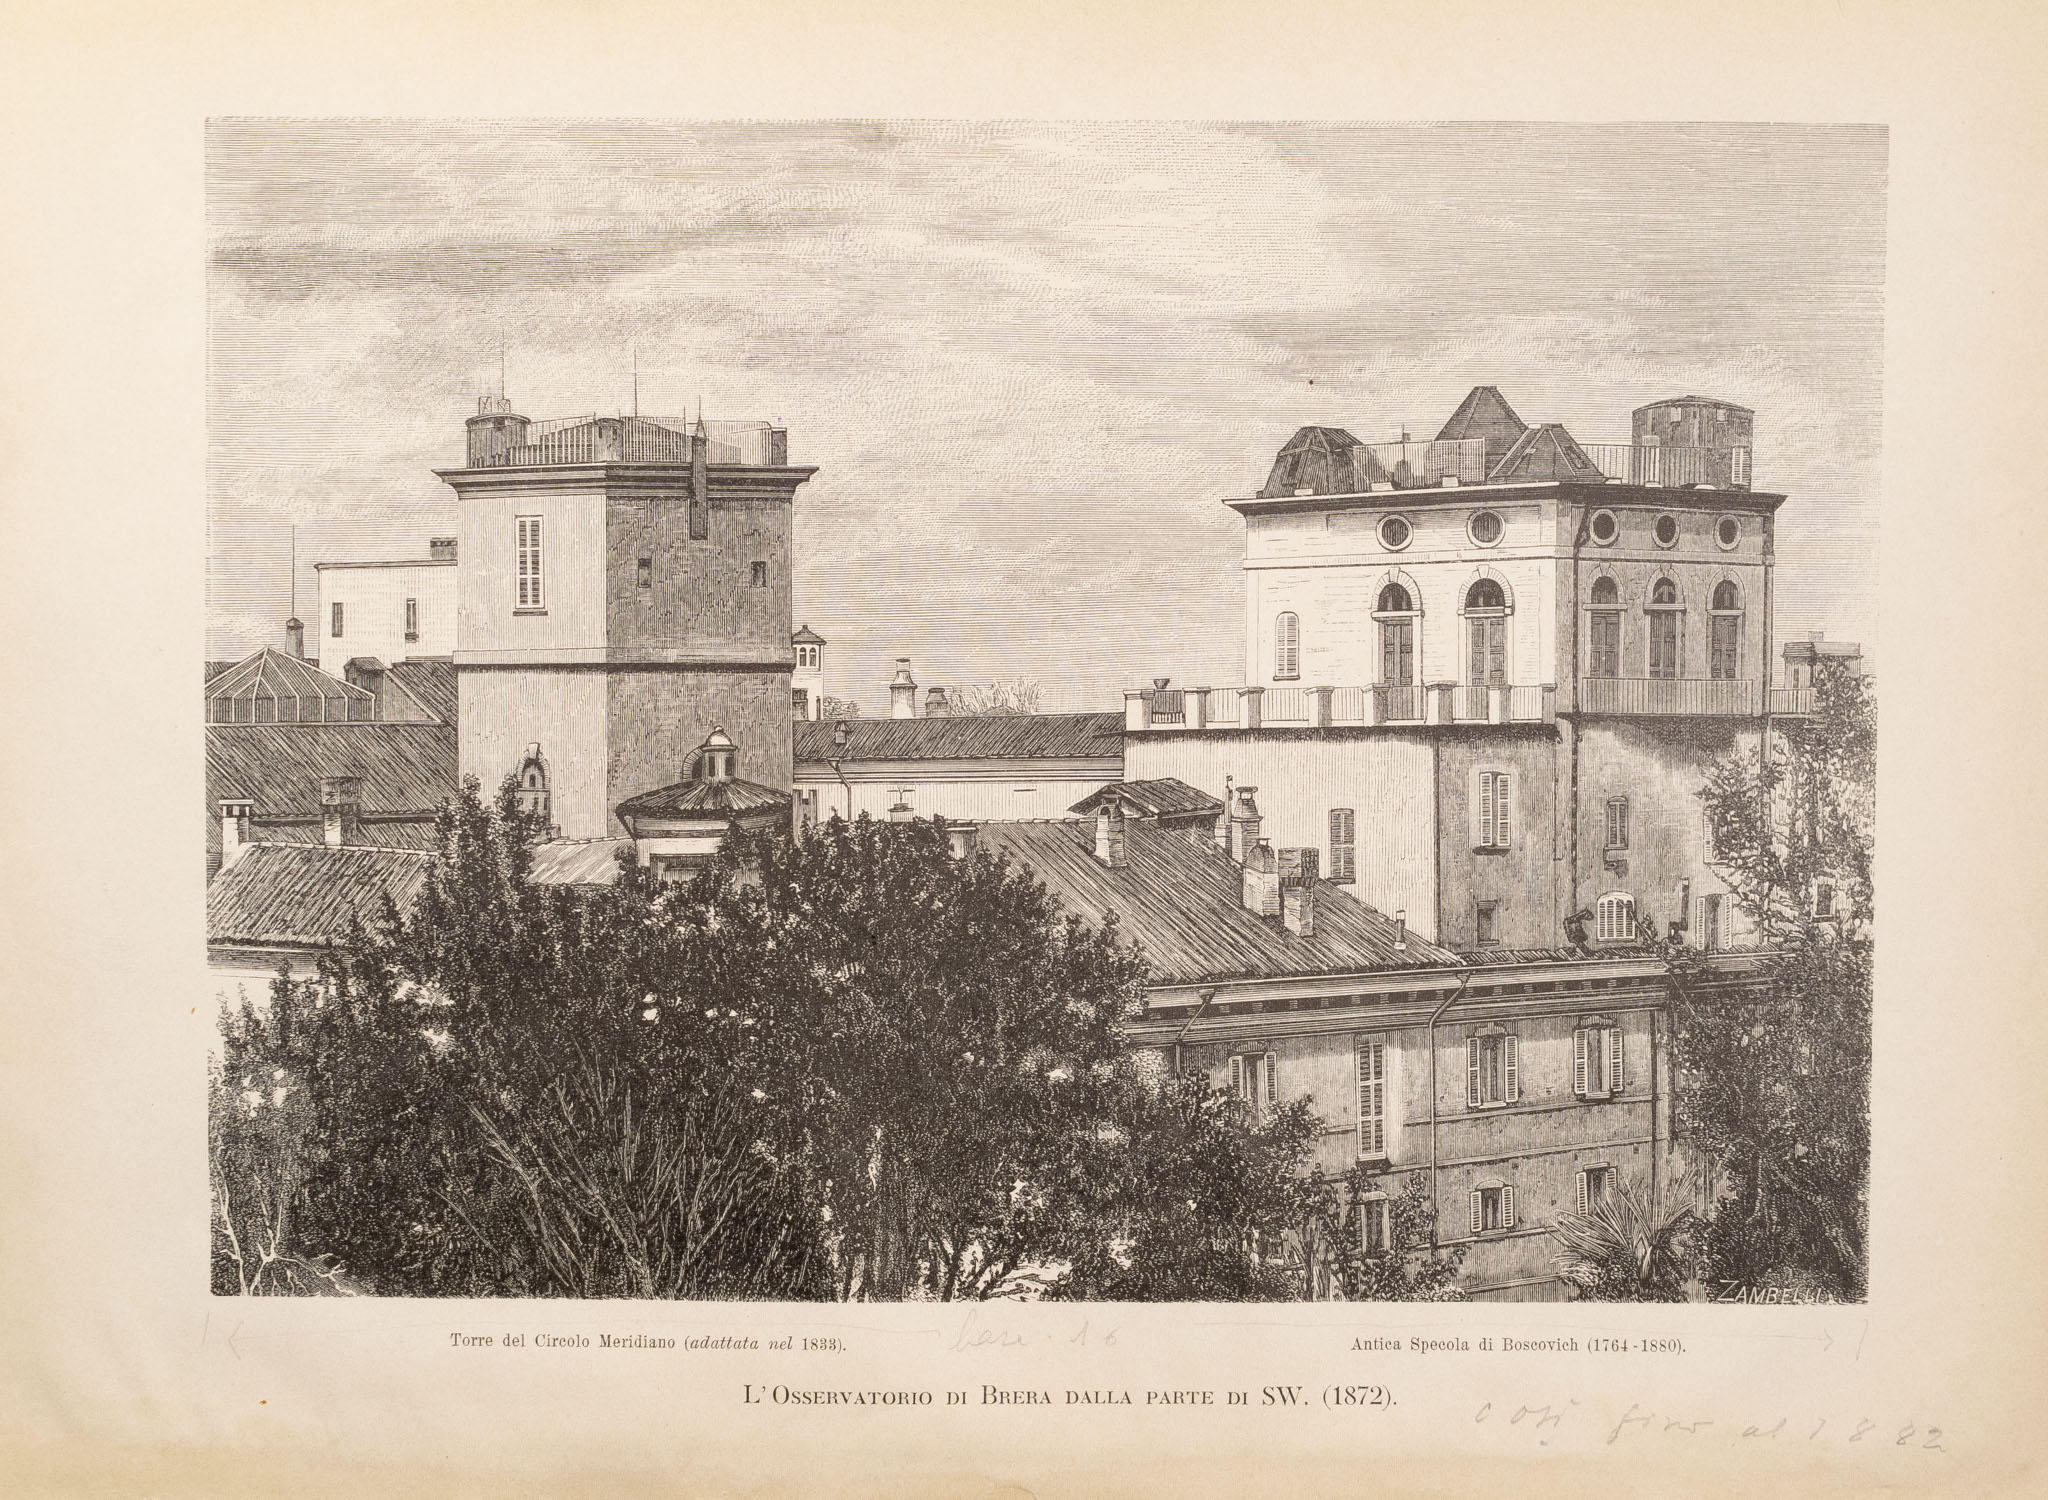 La Specola di Brera dal lato sud-ovest nel 1872